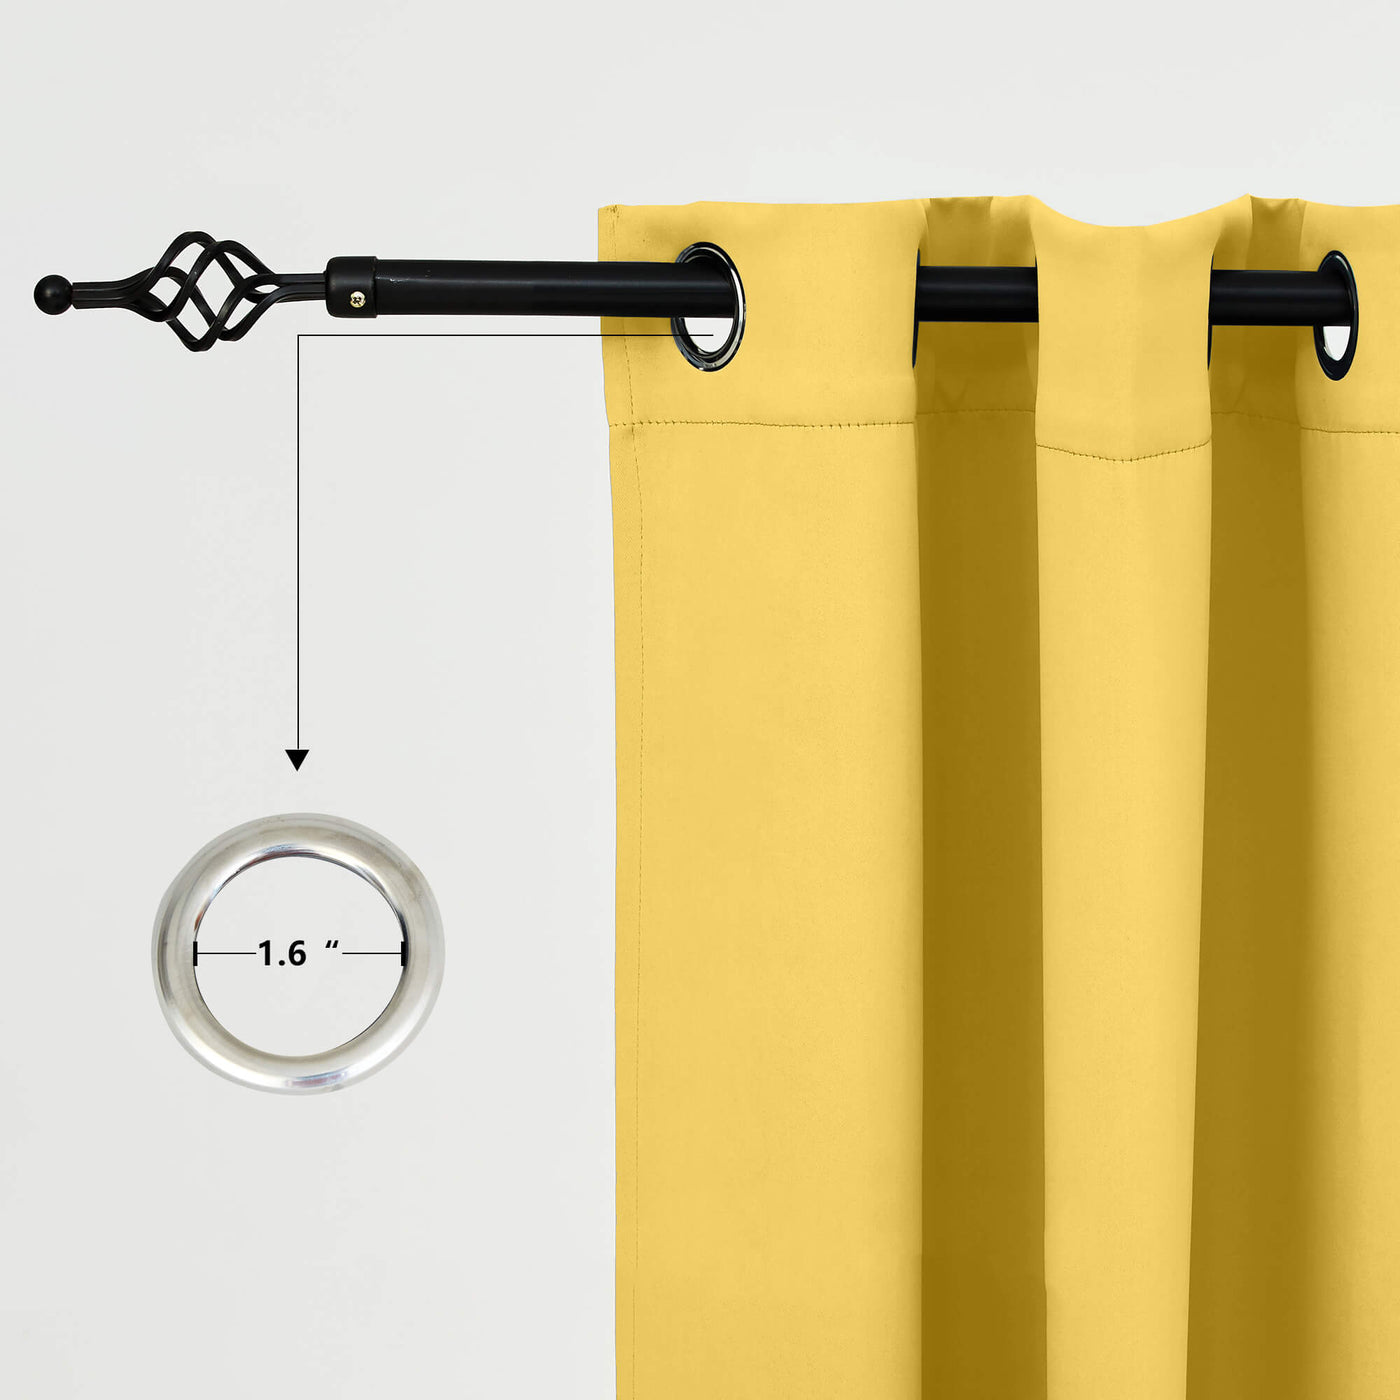 Outdoor Curtains Waterproof Grommet Top 1 Panel - Yellow